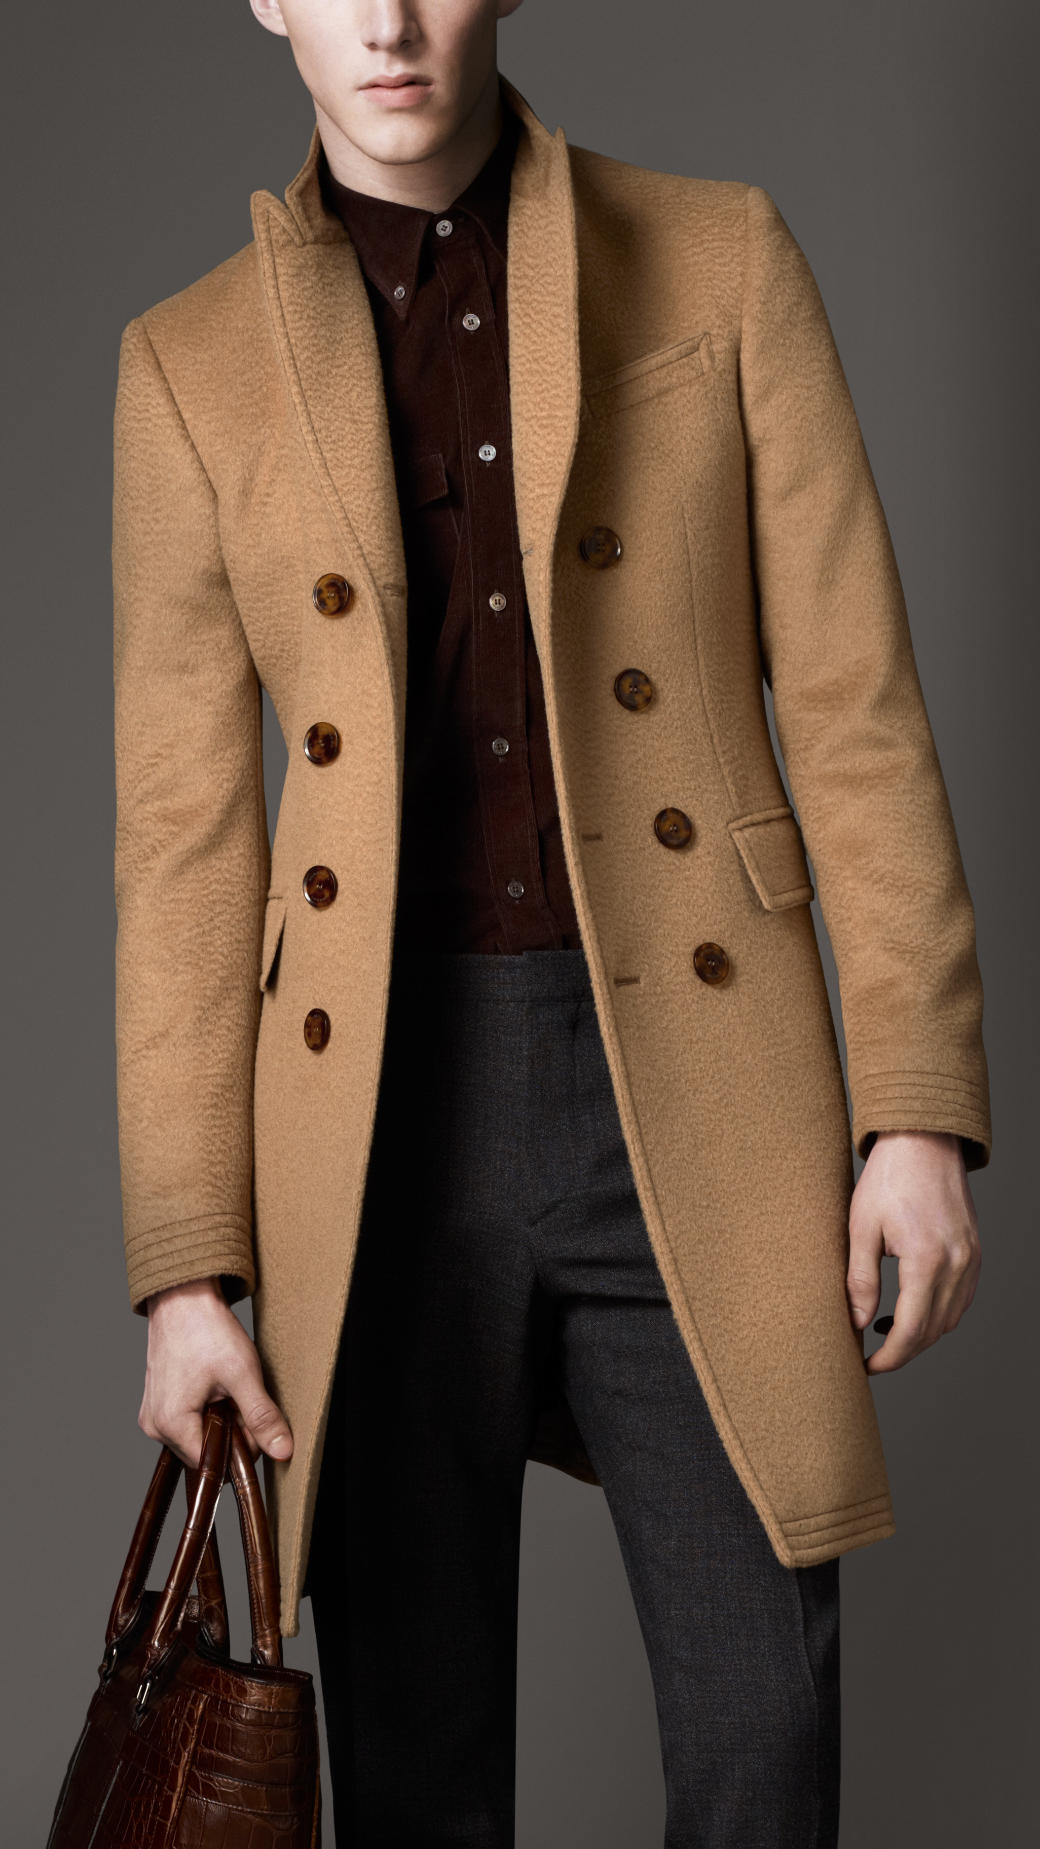 burberry top coat